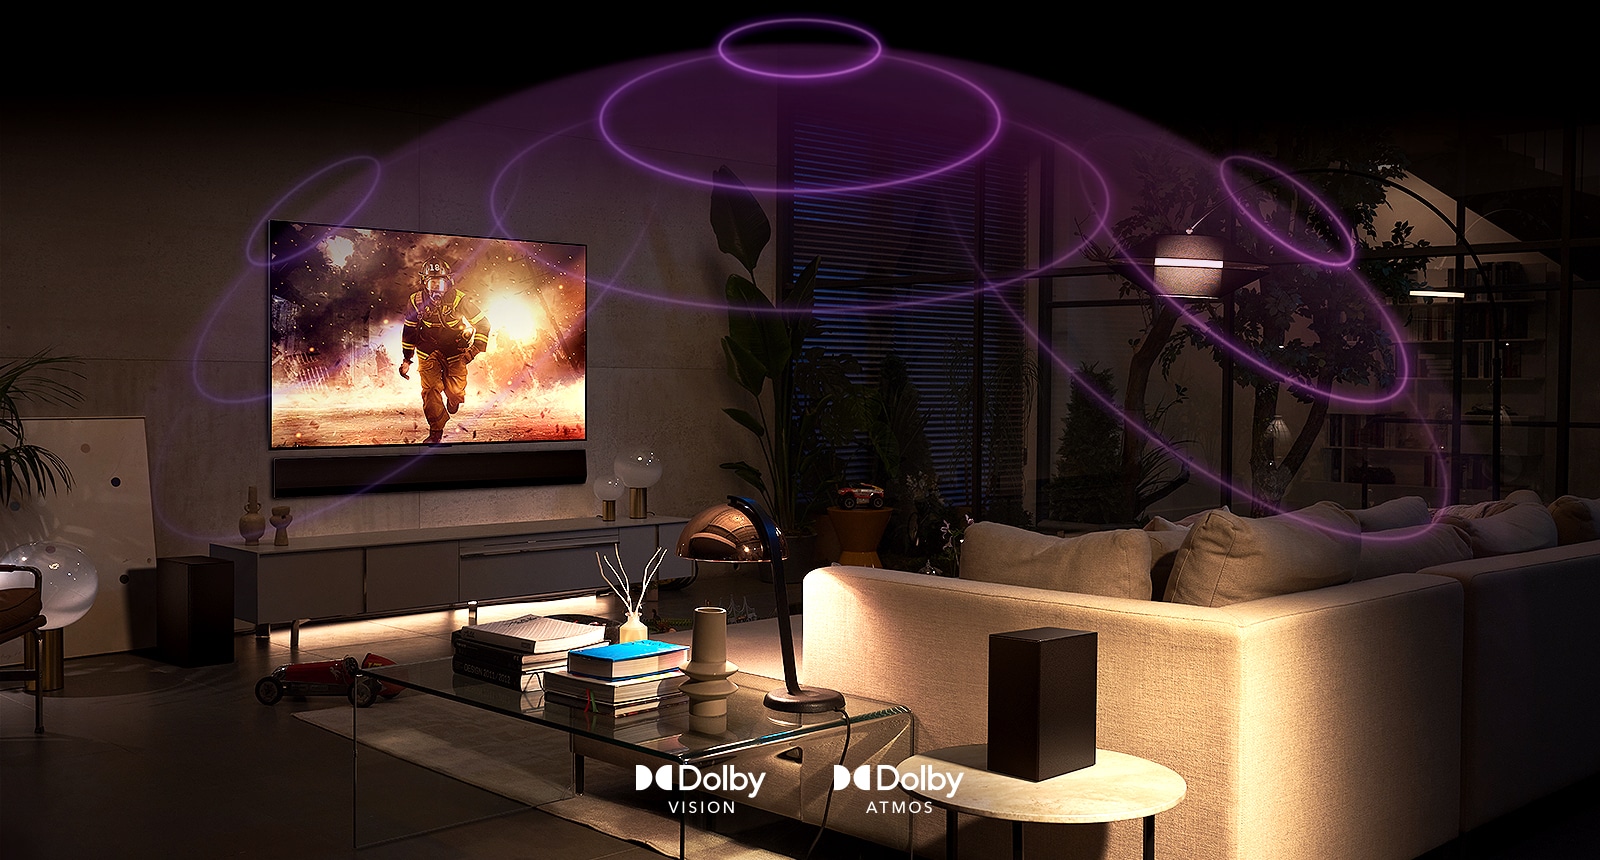 صورة لتلفزيون LG OLED في غرفة يعرض فيلم حركة. موجات صوتية تنشئ شكلاً على هيئة قبل بين الأريكة والتلفزيون لتصور الصوت المكاني الغامر.